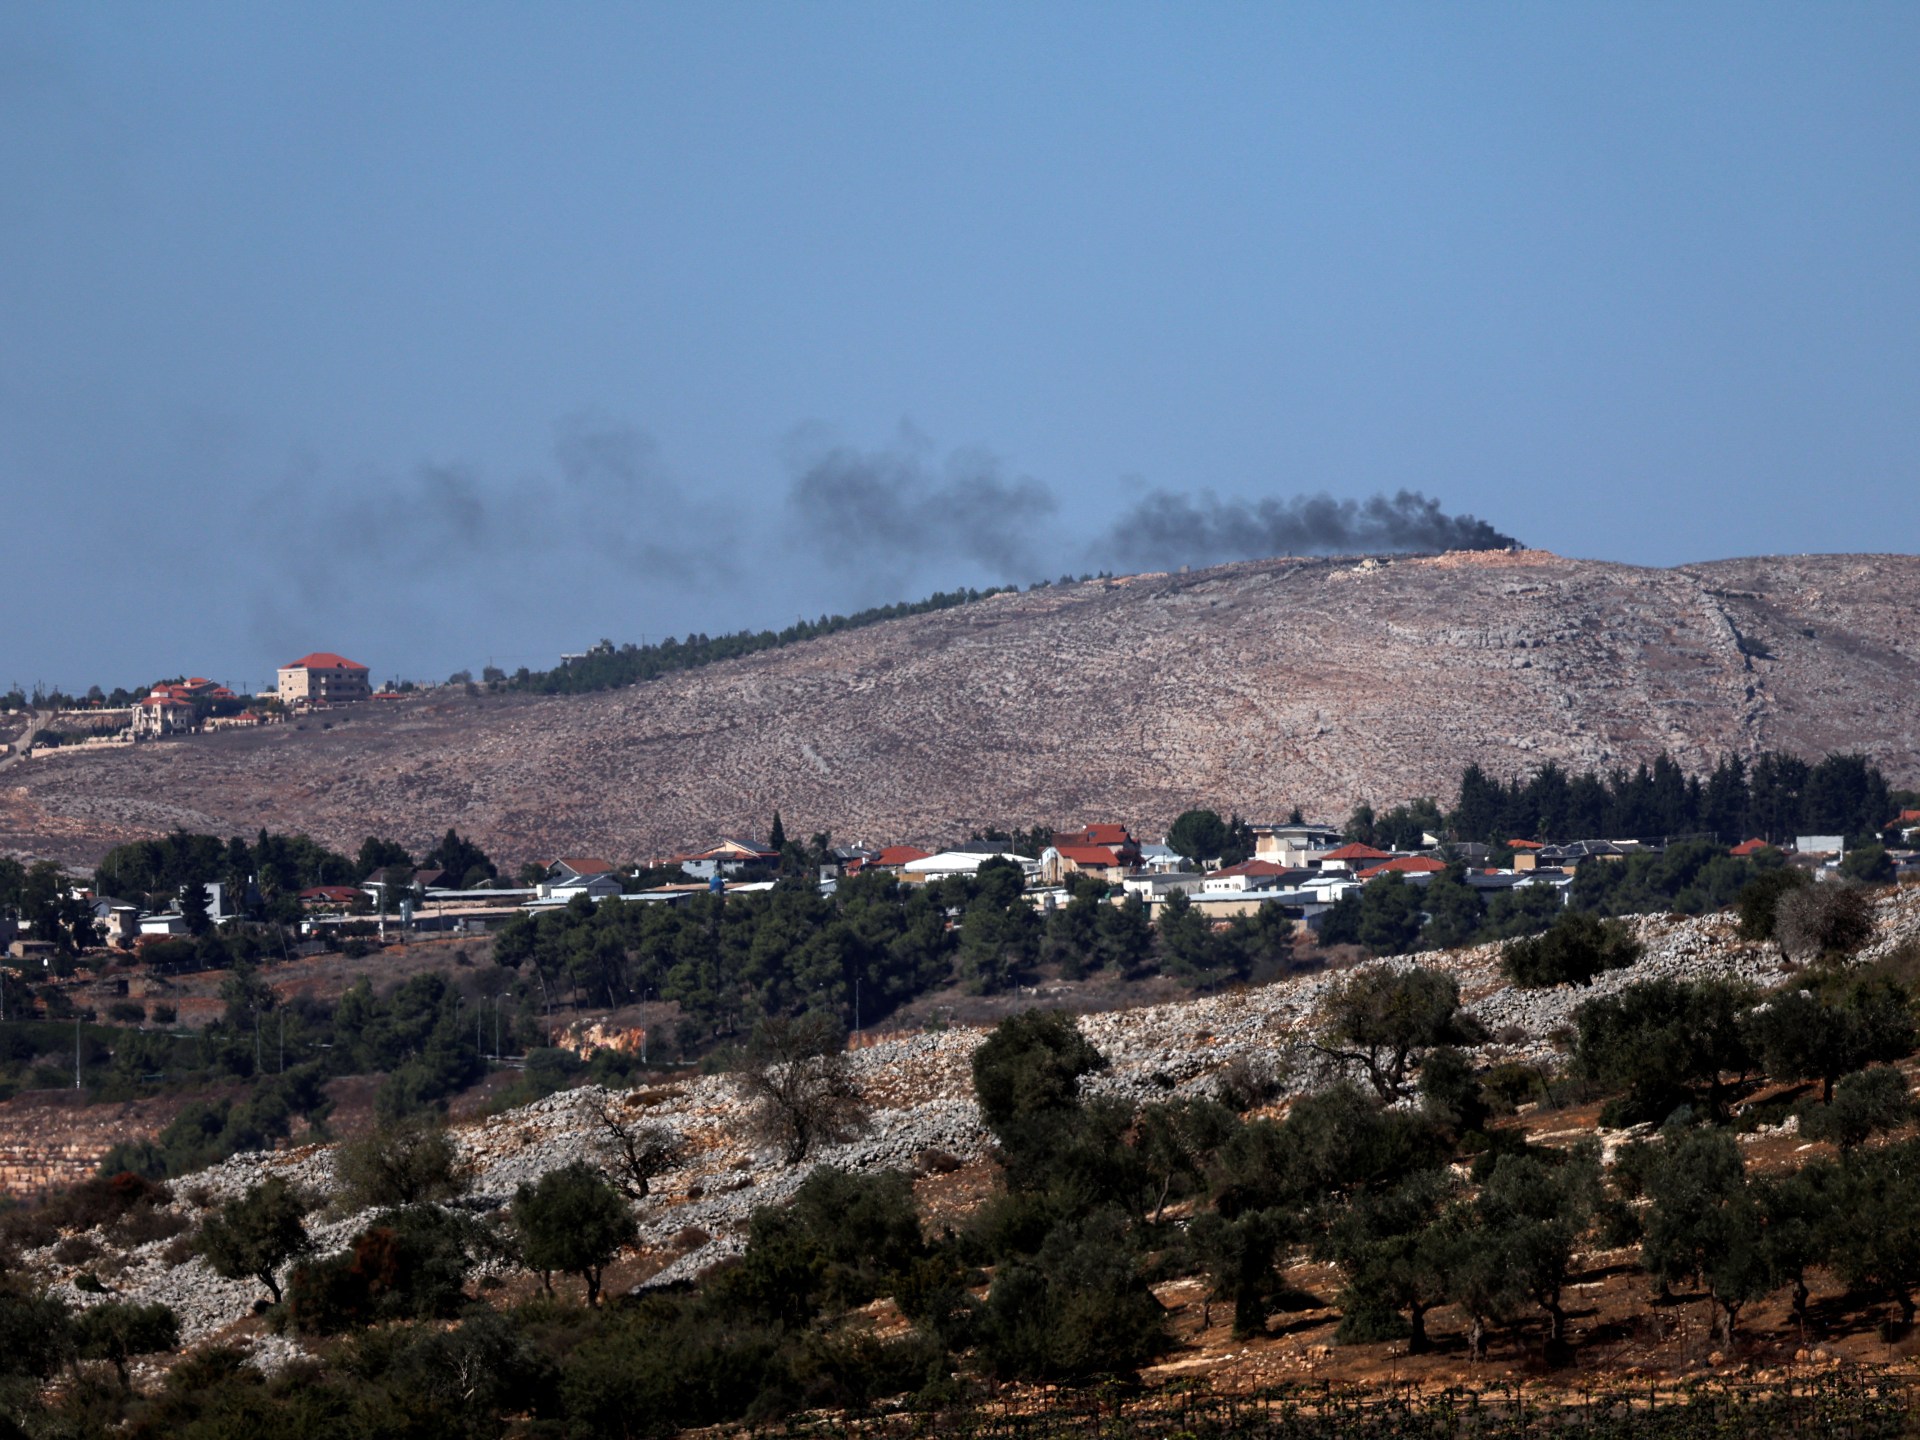 حزب الله يهاجم مواقع إسرائيلية بصواريخ “بركان” وطائرات انقضاضية | أخبار – البوكس نيوز